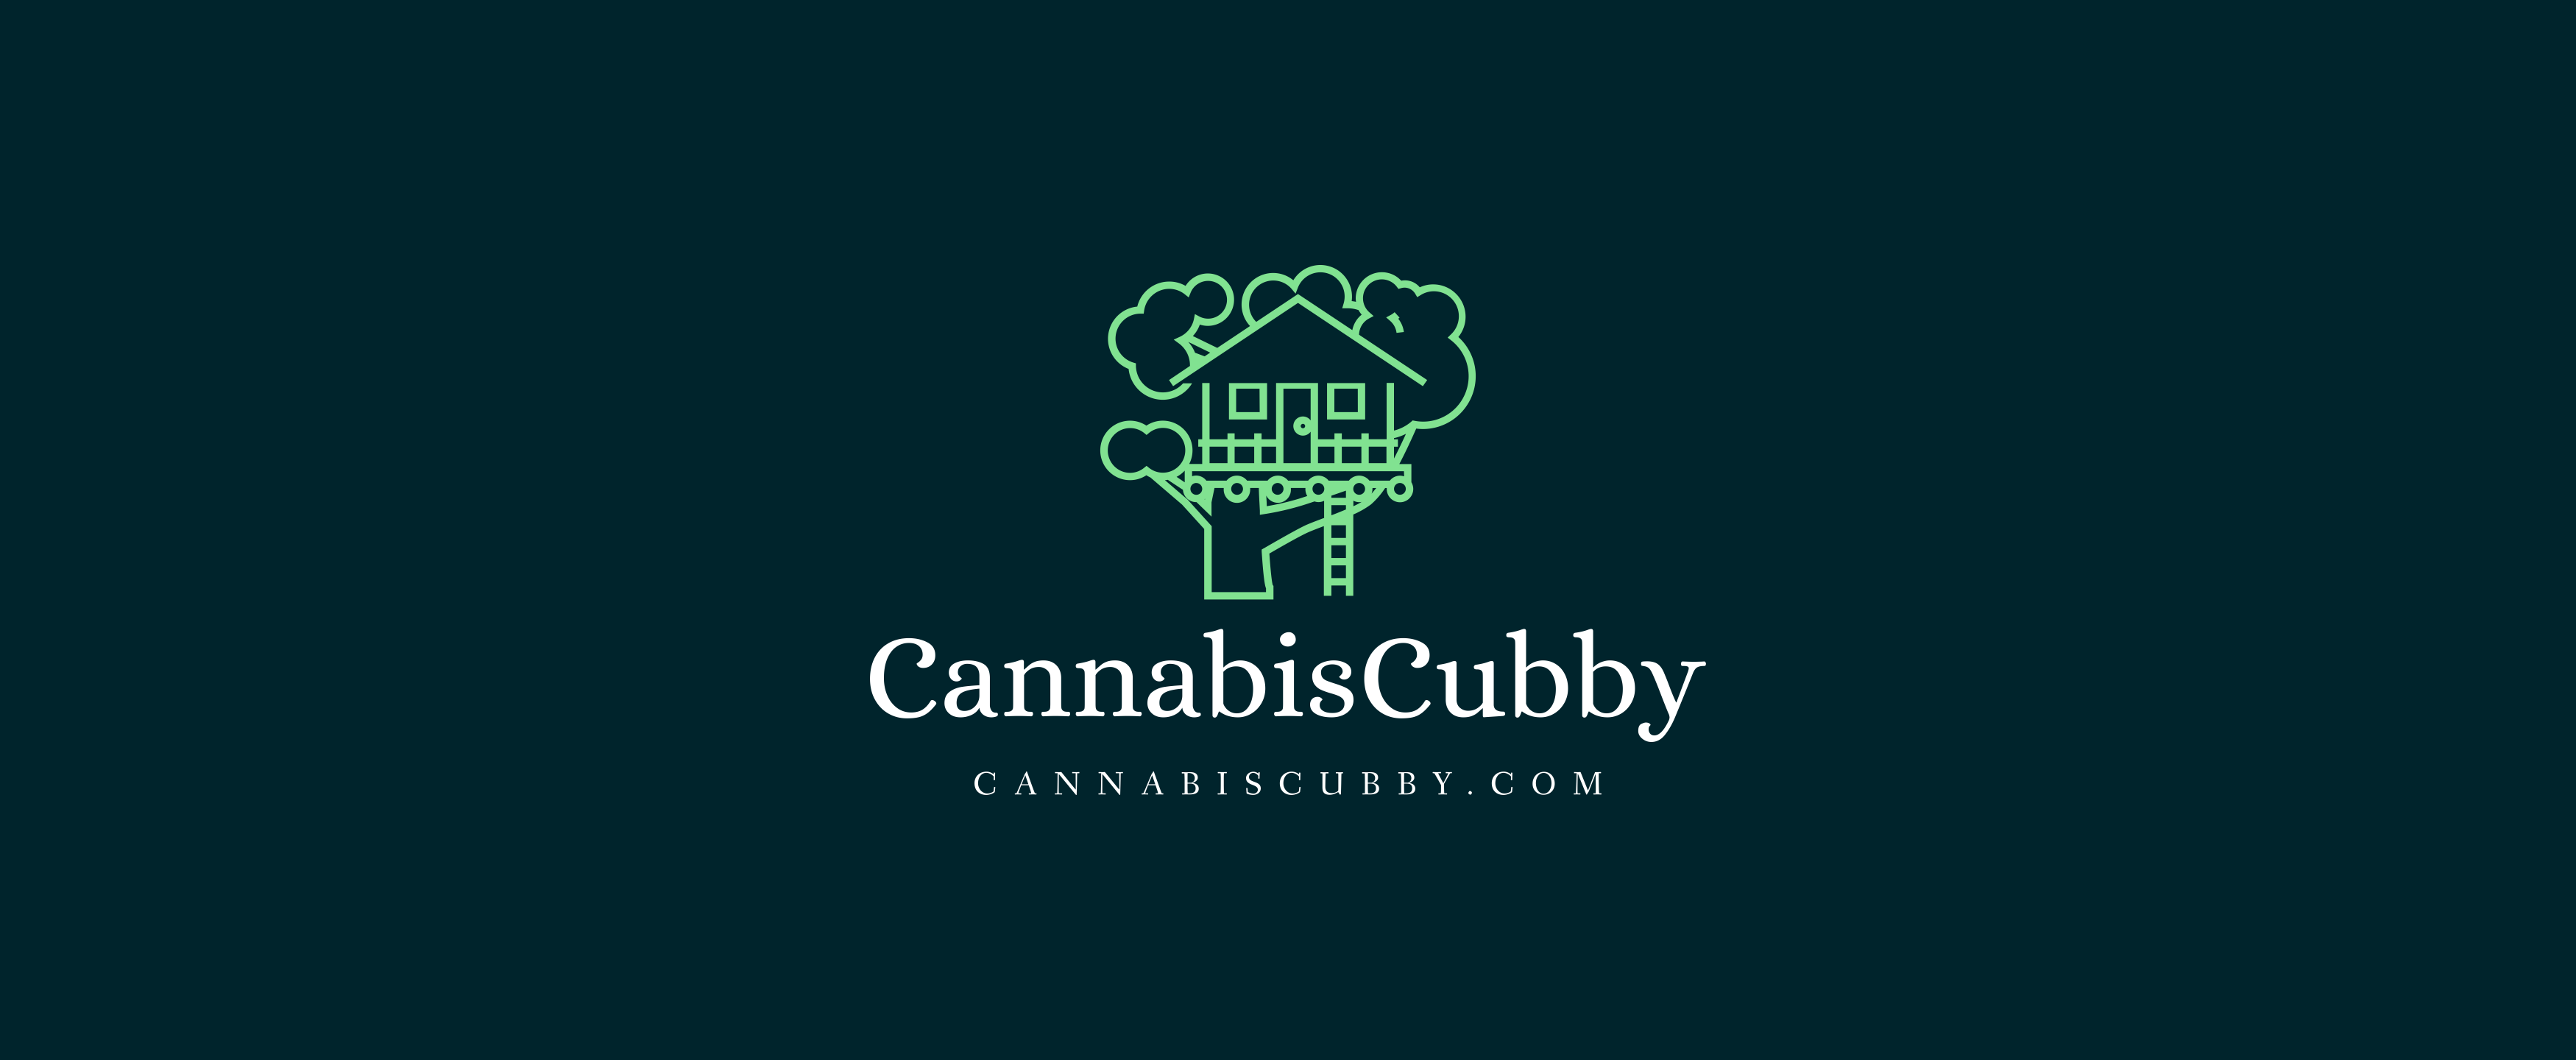 Cannabis Cubby